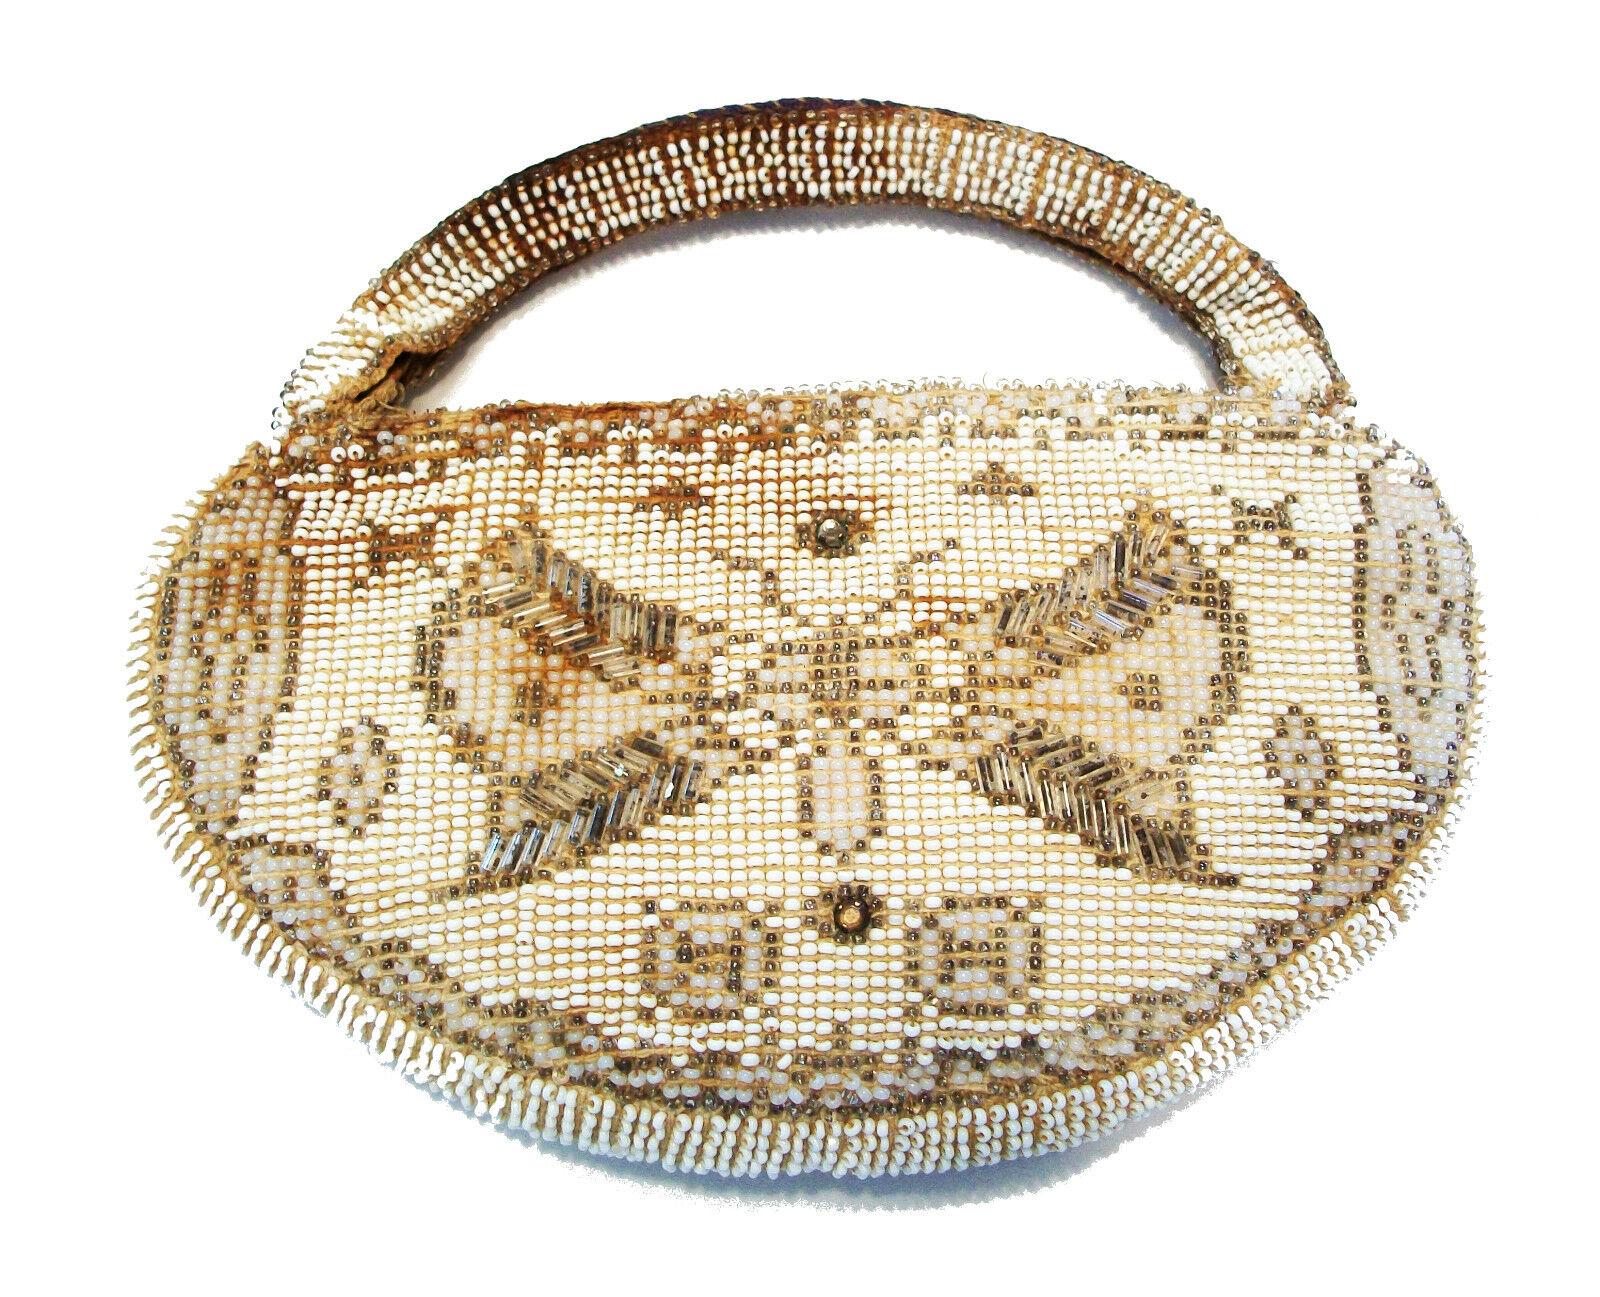 Art Deco Perlen Abendtasche mit Schmetterlingen - kleine Größe  - feine Perlen und Details, handgenäht mit Milchglas- und undurchsichtigen Rund- und Bügelperlen - originaler Reißverschluss - vollständig mit Perlen besetzter Riemen - originales